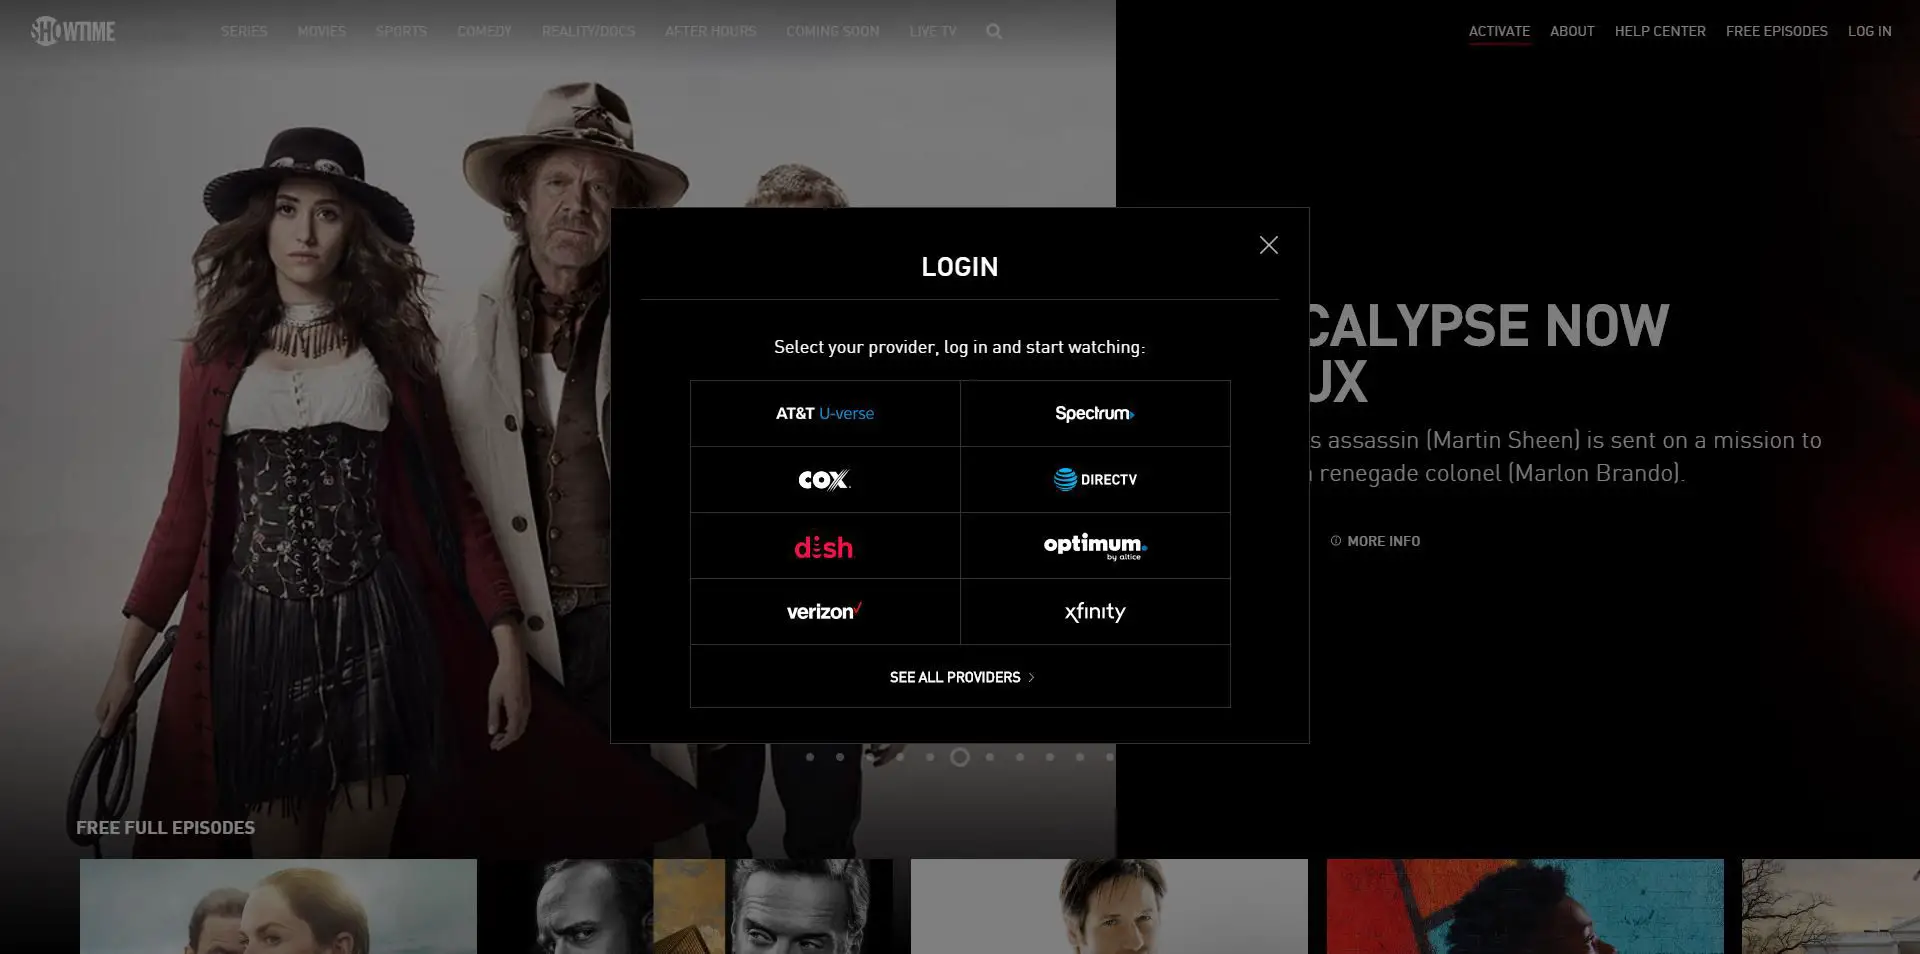 Captura de tela do login do Showtime Anytime no navegador da web